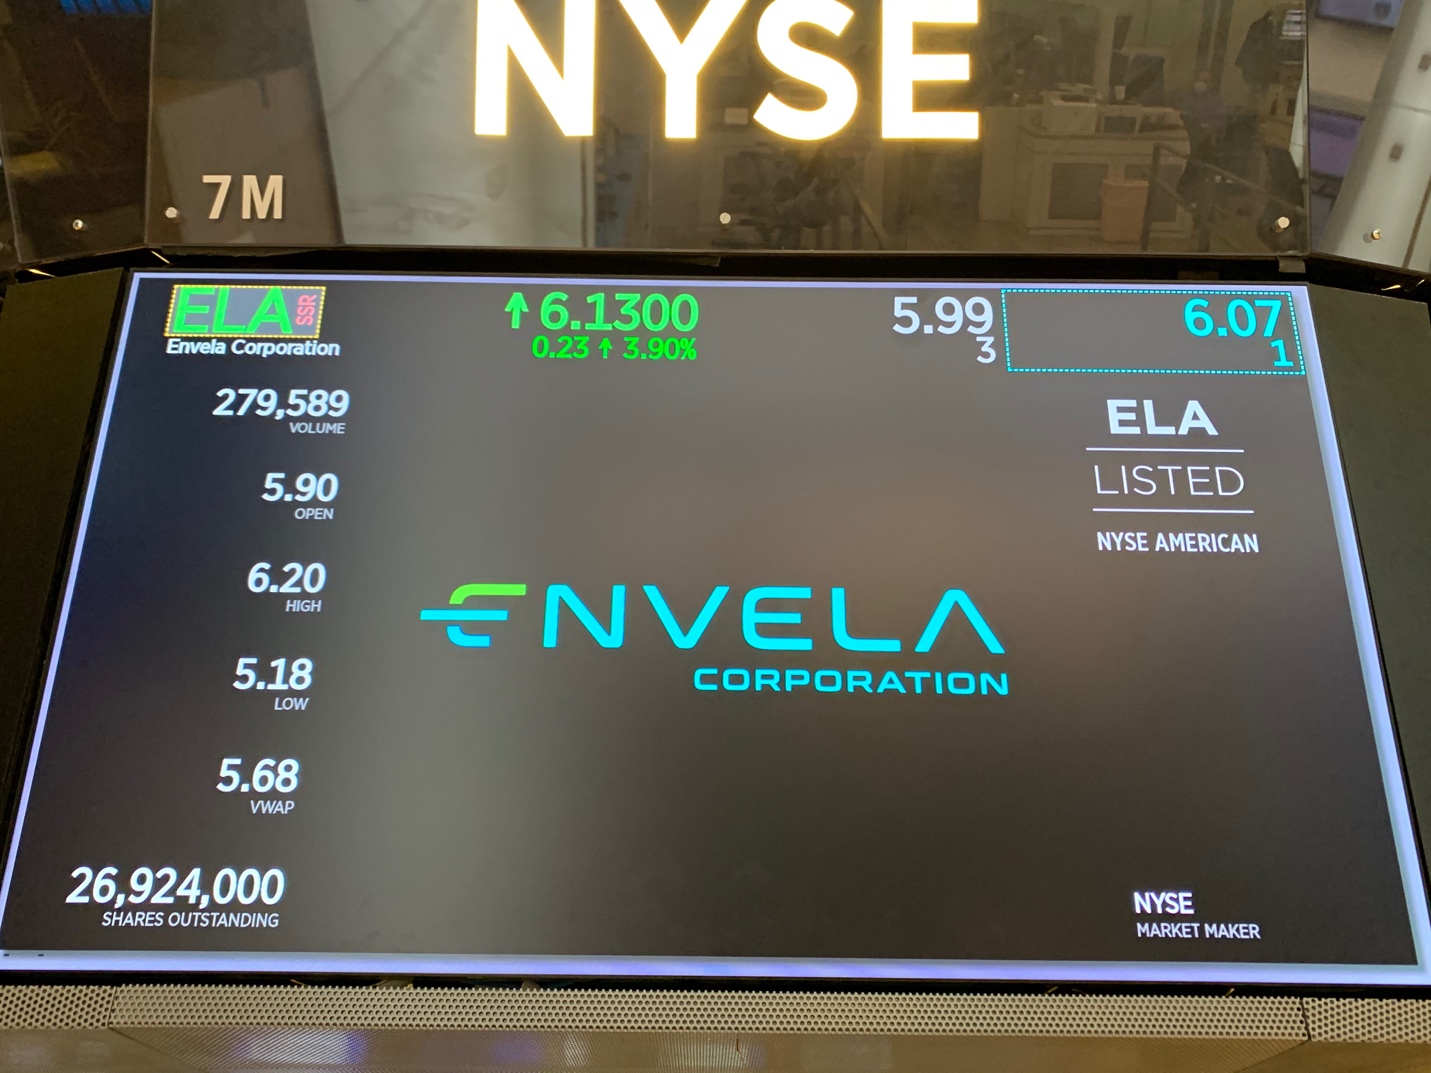 Envela Corporation, Tuesday, June 30, 2020, Press release picture